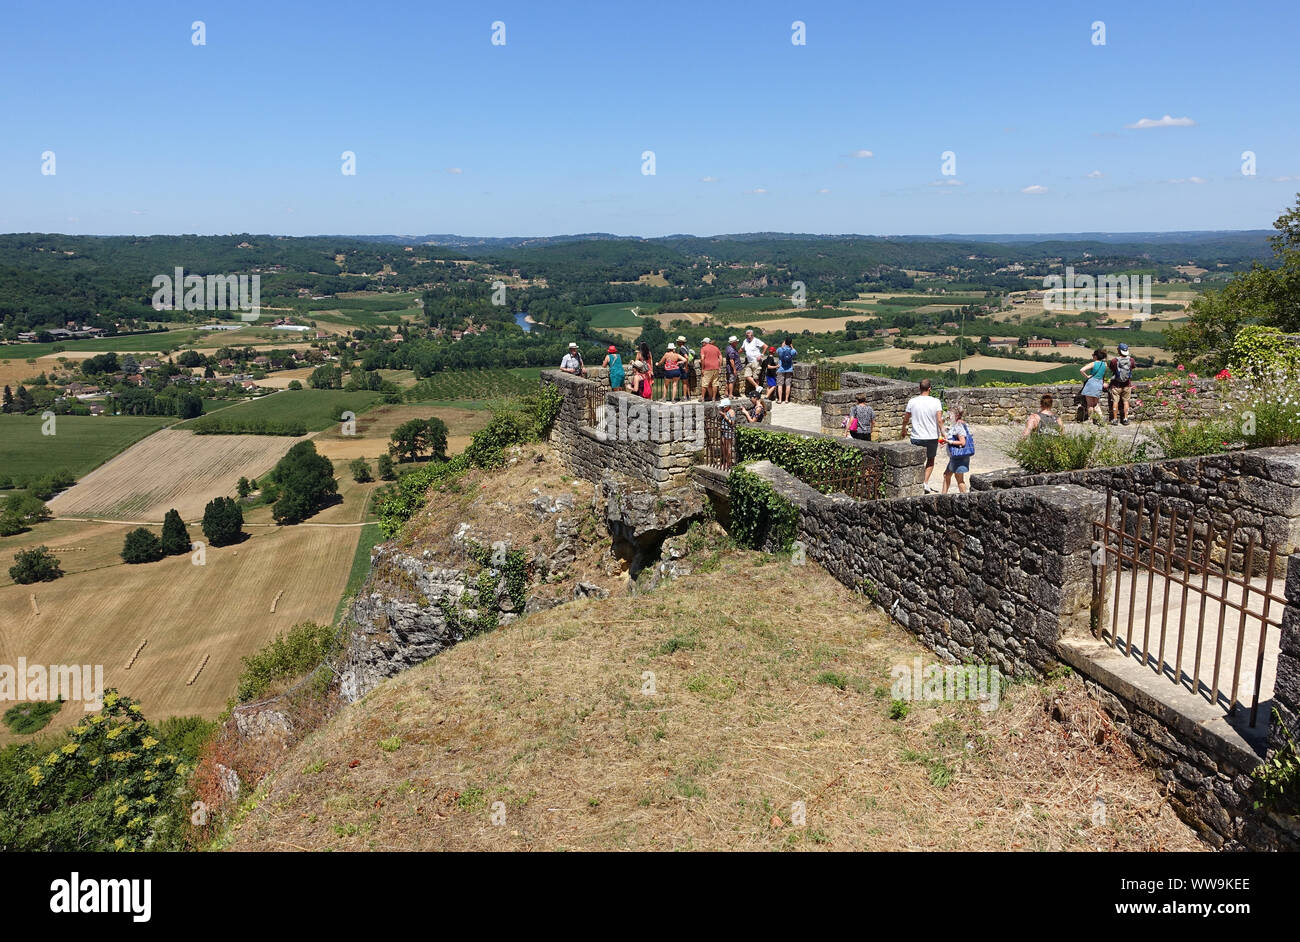 Domme, France 15 Juillet 2019 : les touristes debout sur une plate-forme d'observation surplombant la Dordogne à partir de la ville de Domme en France Banque D'Images